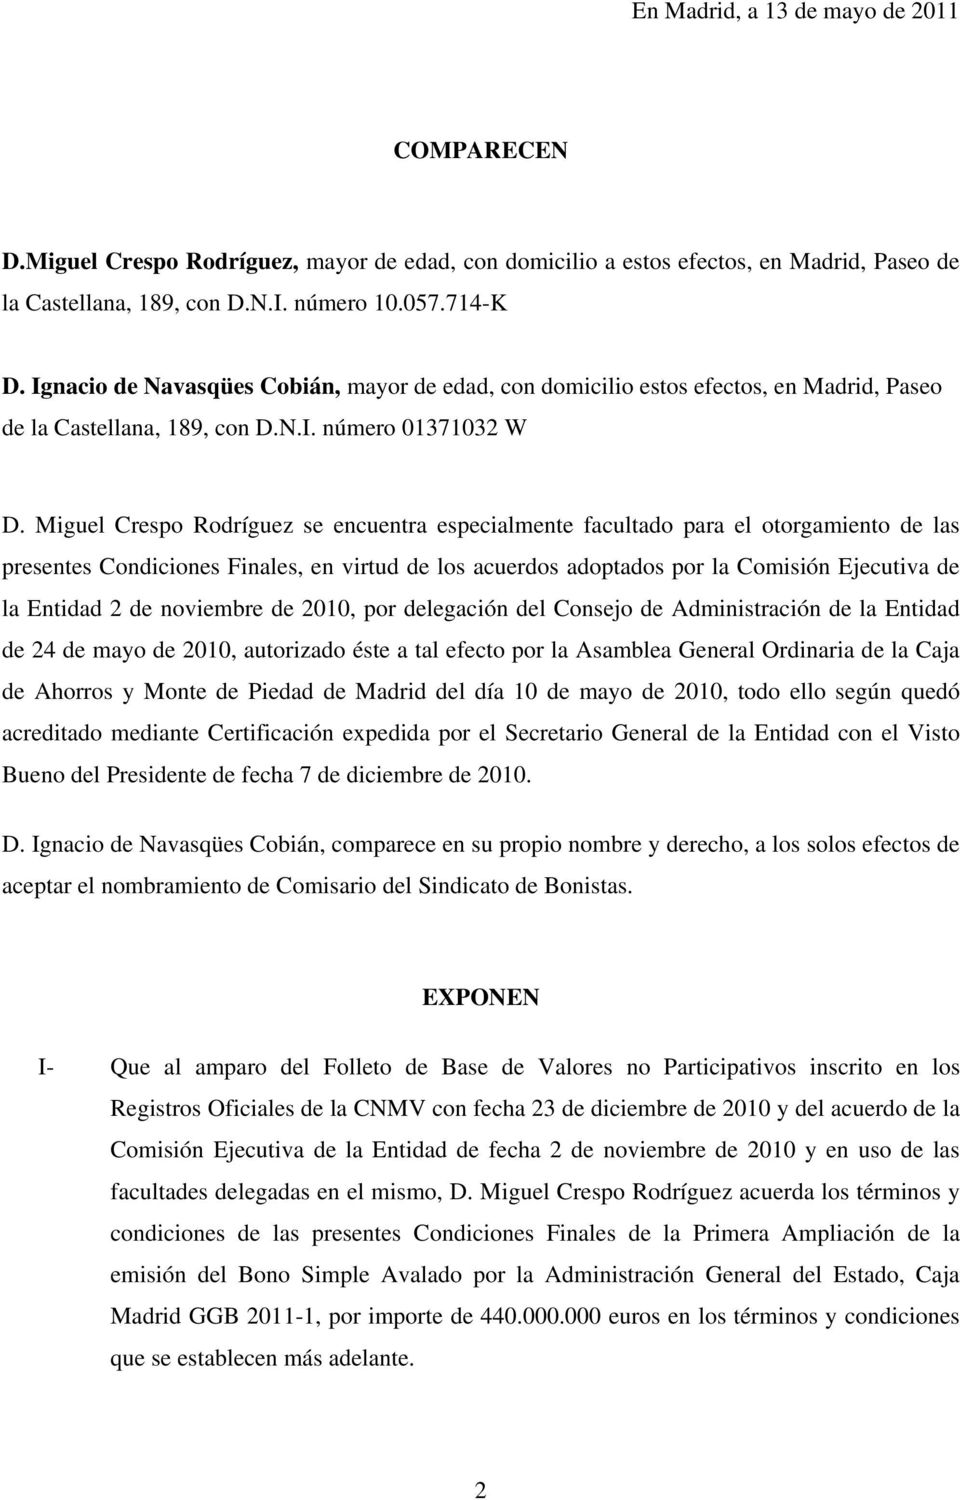 Miguel Crespo Rodríguez se encuentra especialmente facultado para el otorgamiento de las presentes Condiciones Finales, en virtud de los acuerdos adoptados por la Comisión Ejecutiva de la Entidad 2